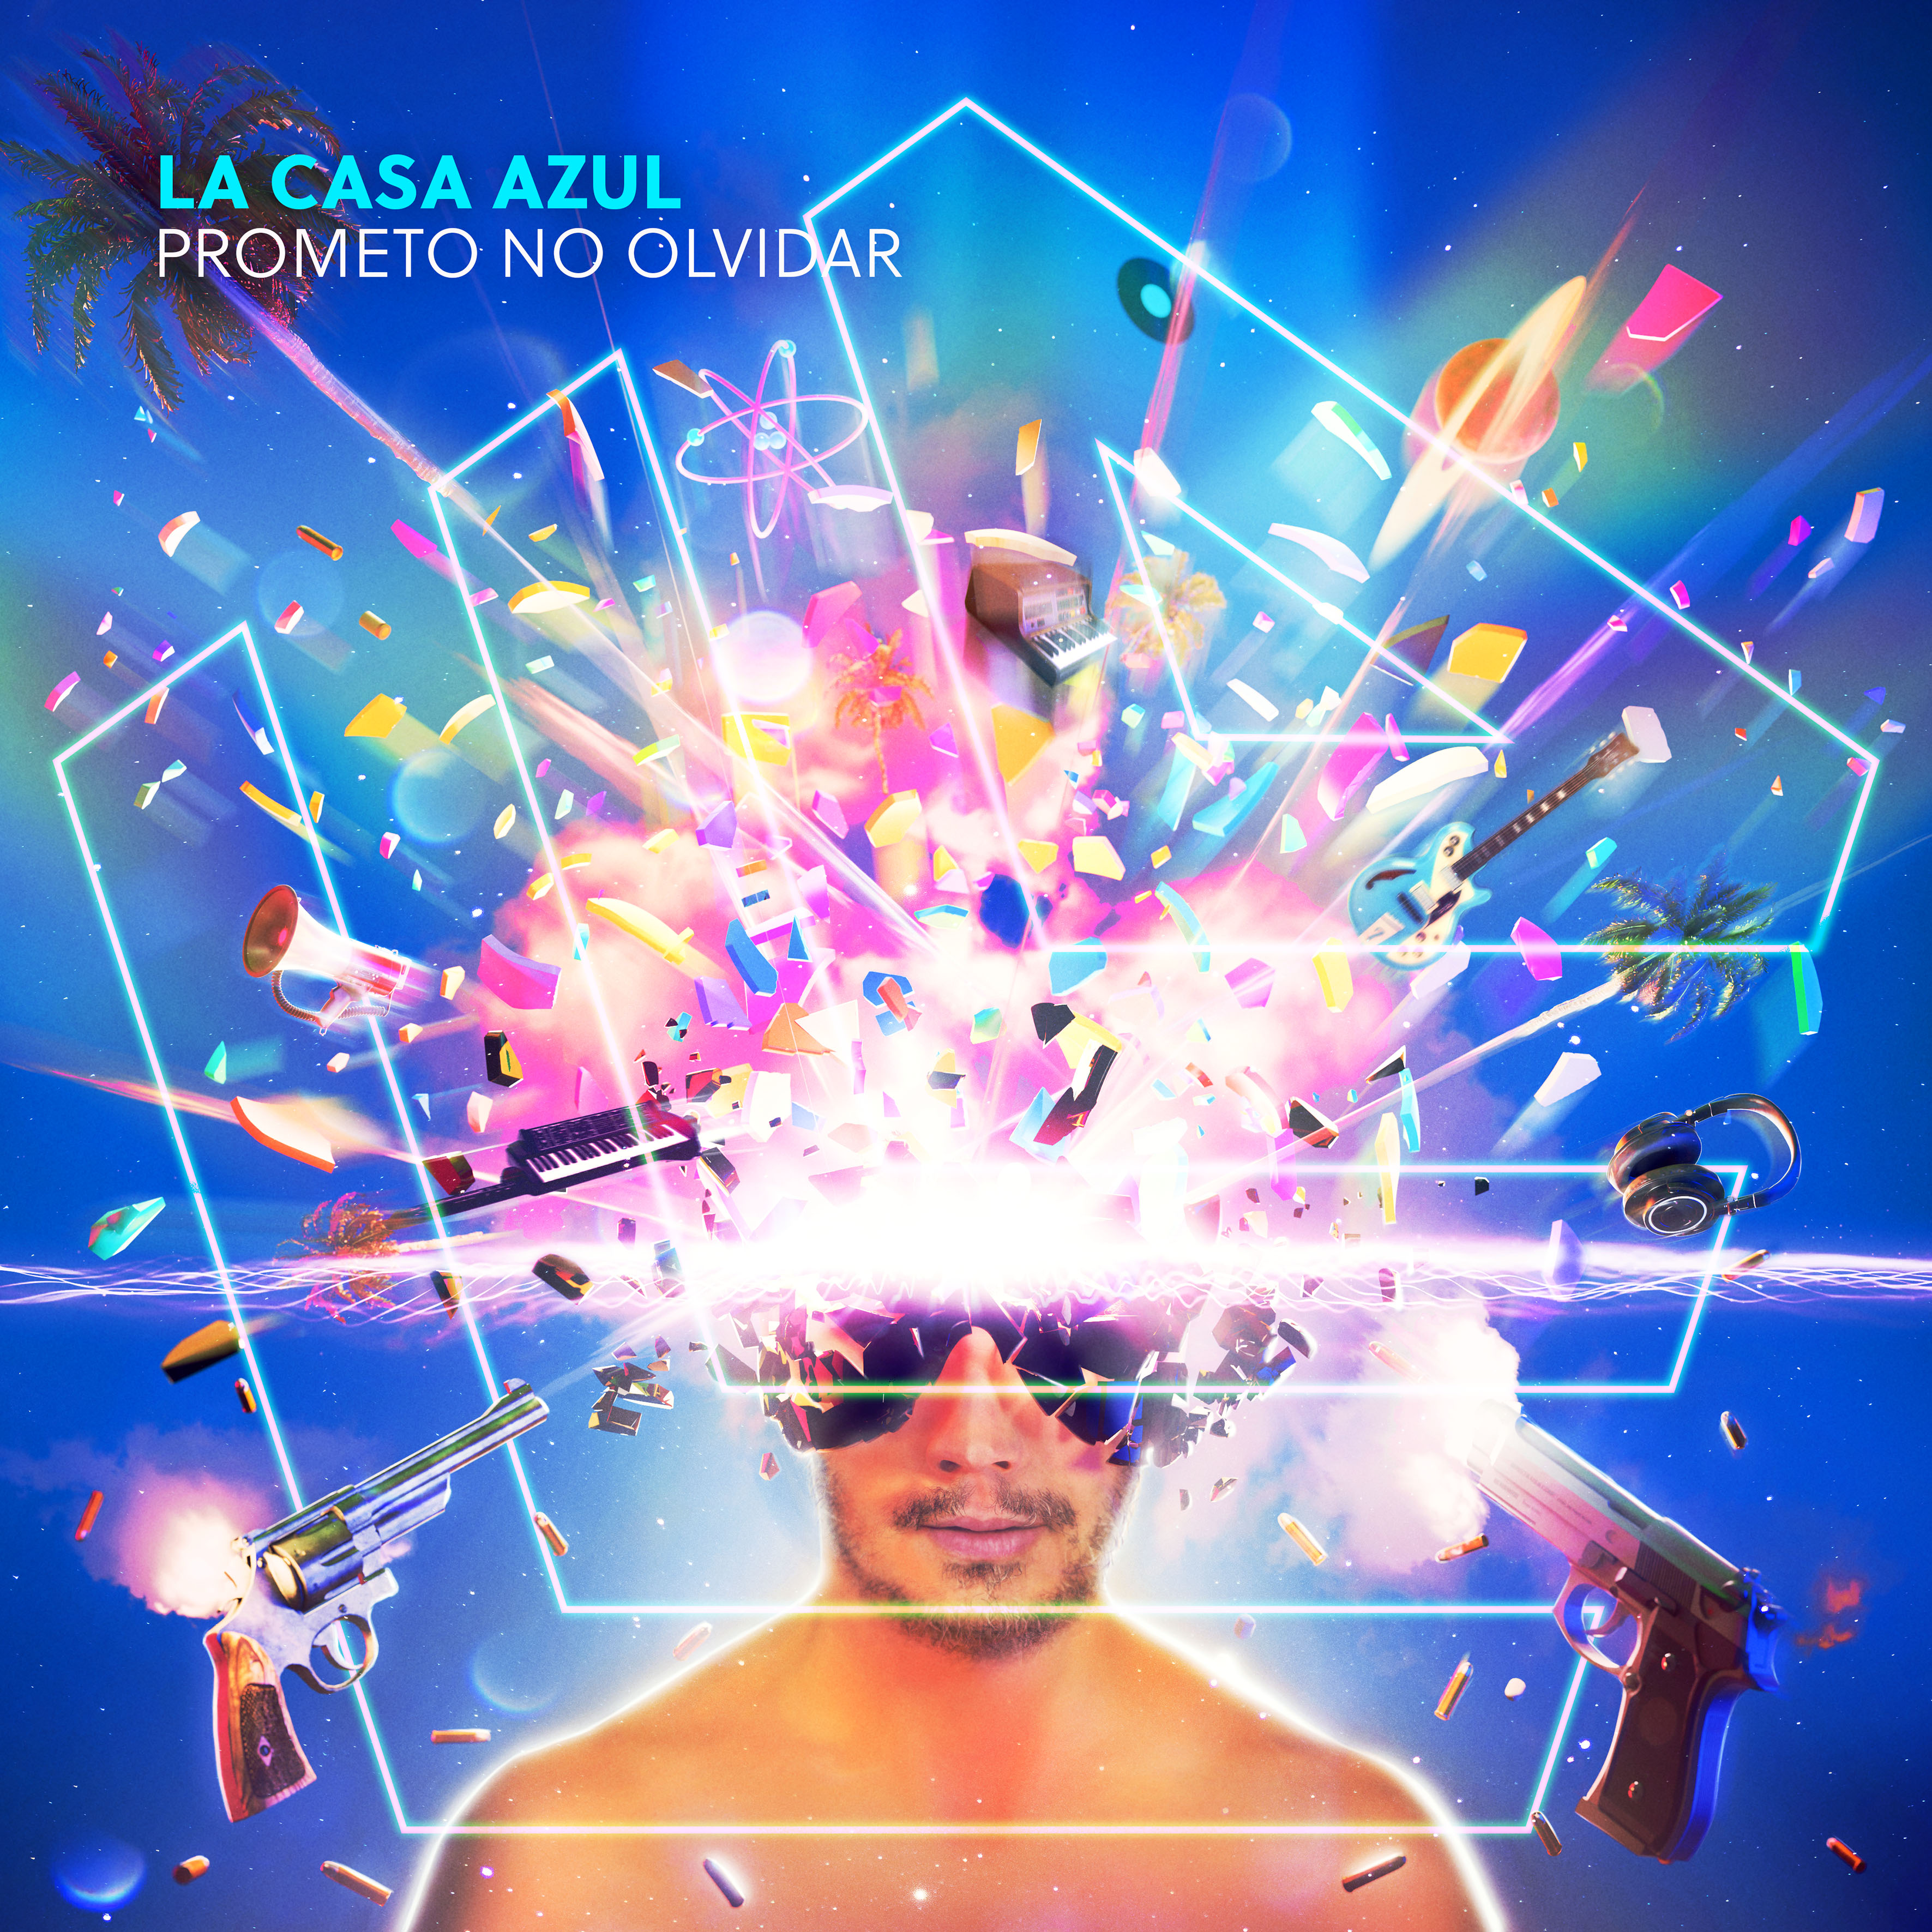 LA CASA AZUL "Prometo No Olvidar" Single